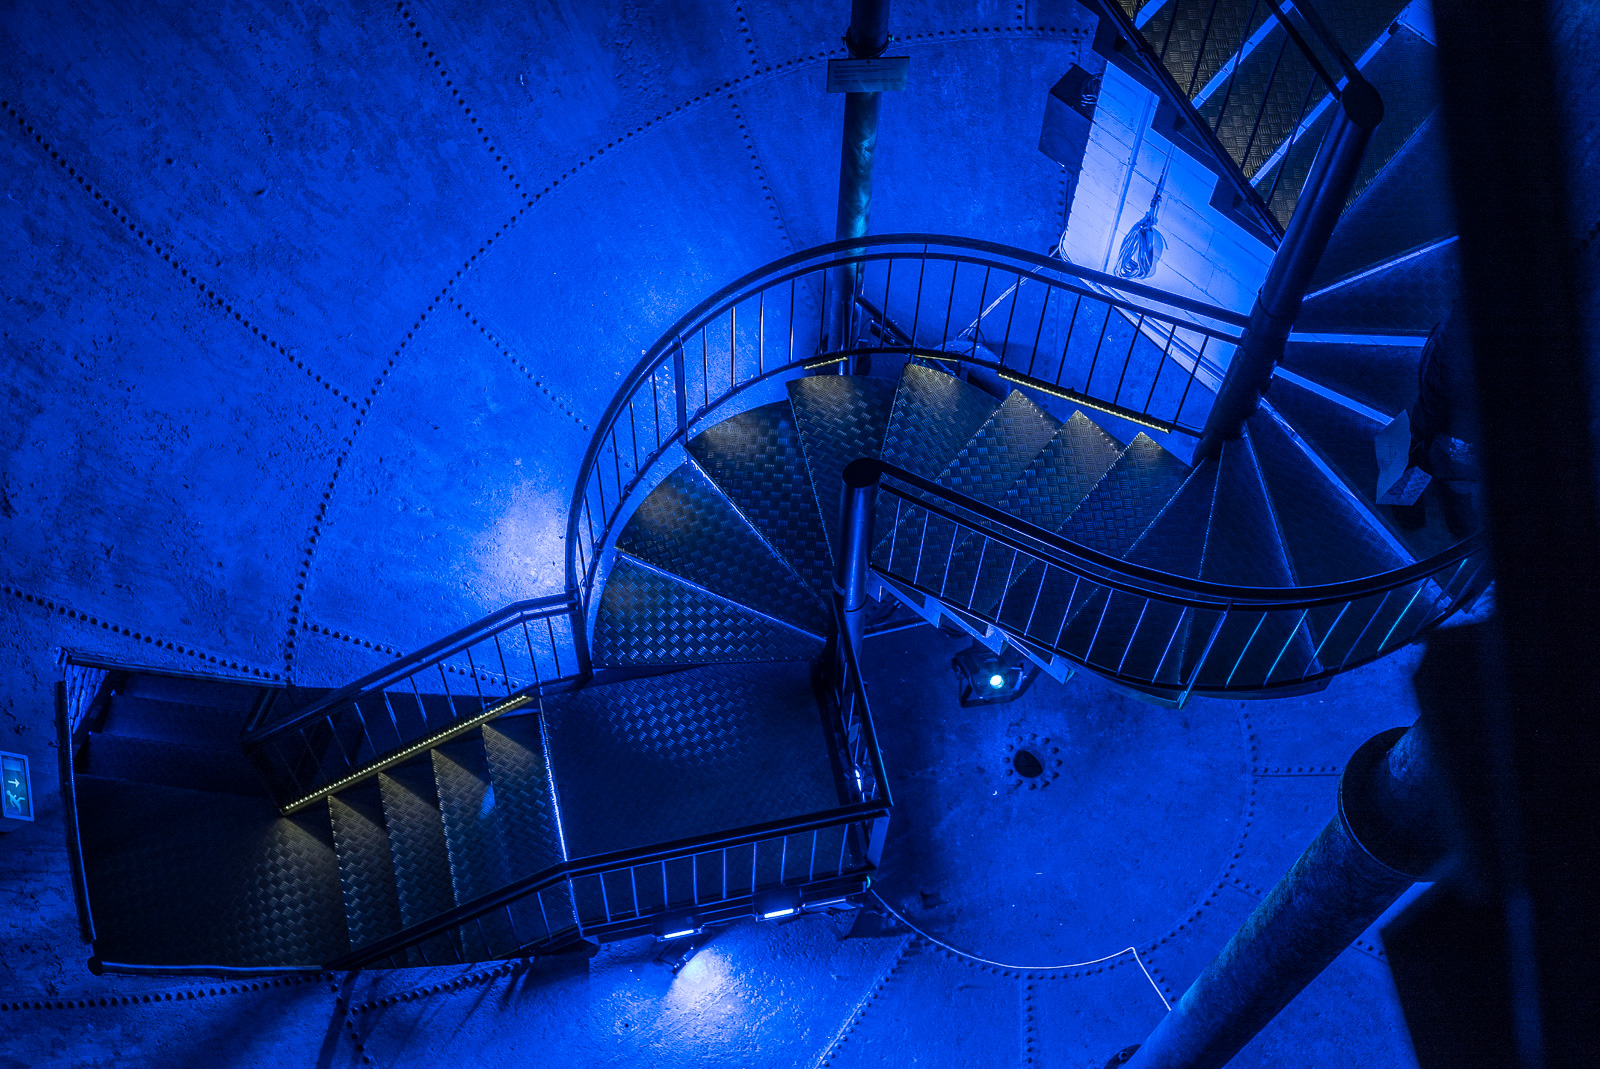 Treppenhaus des Wasserturms, intensiv blau lackiert und effektvoll beleuchtet (1)